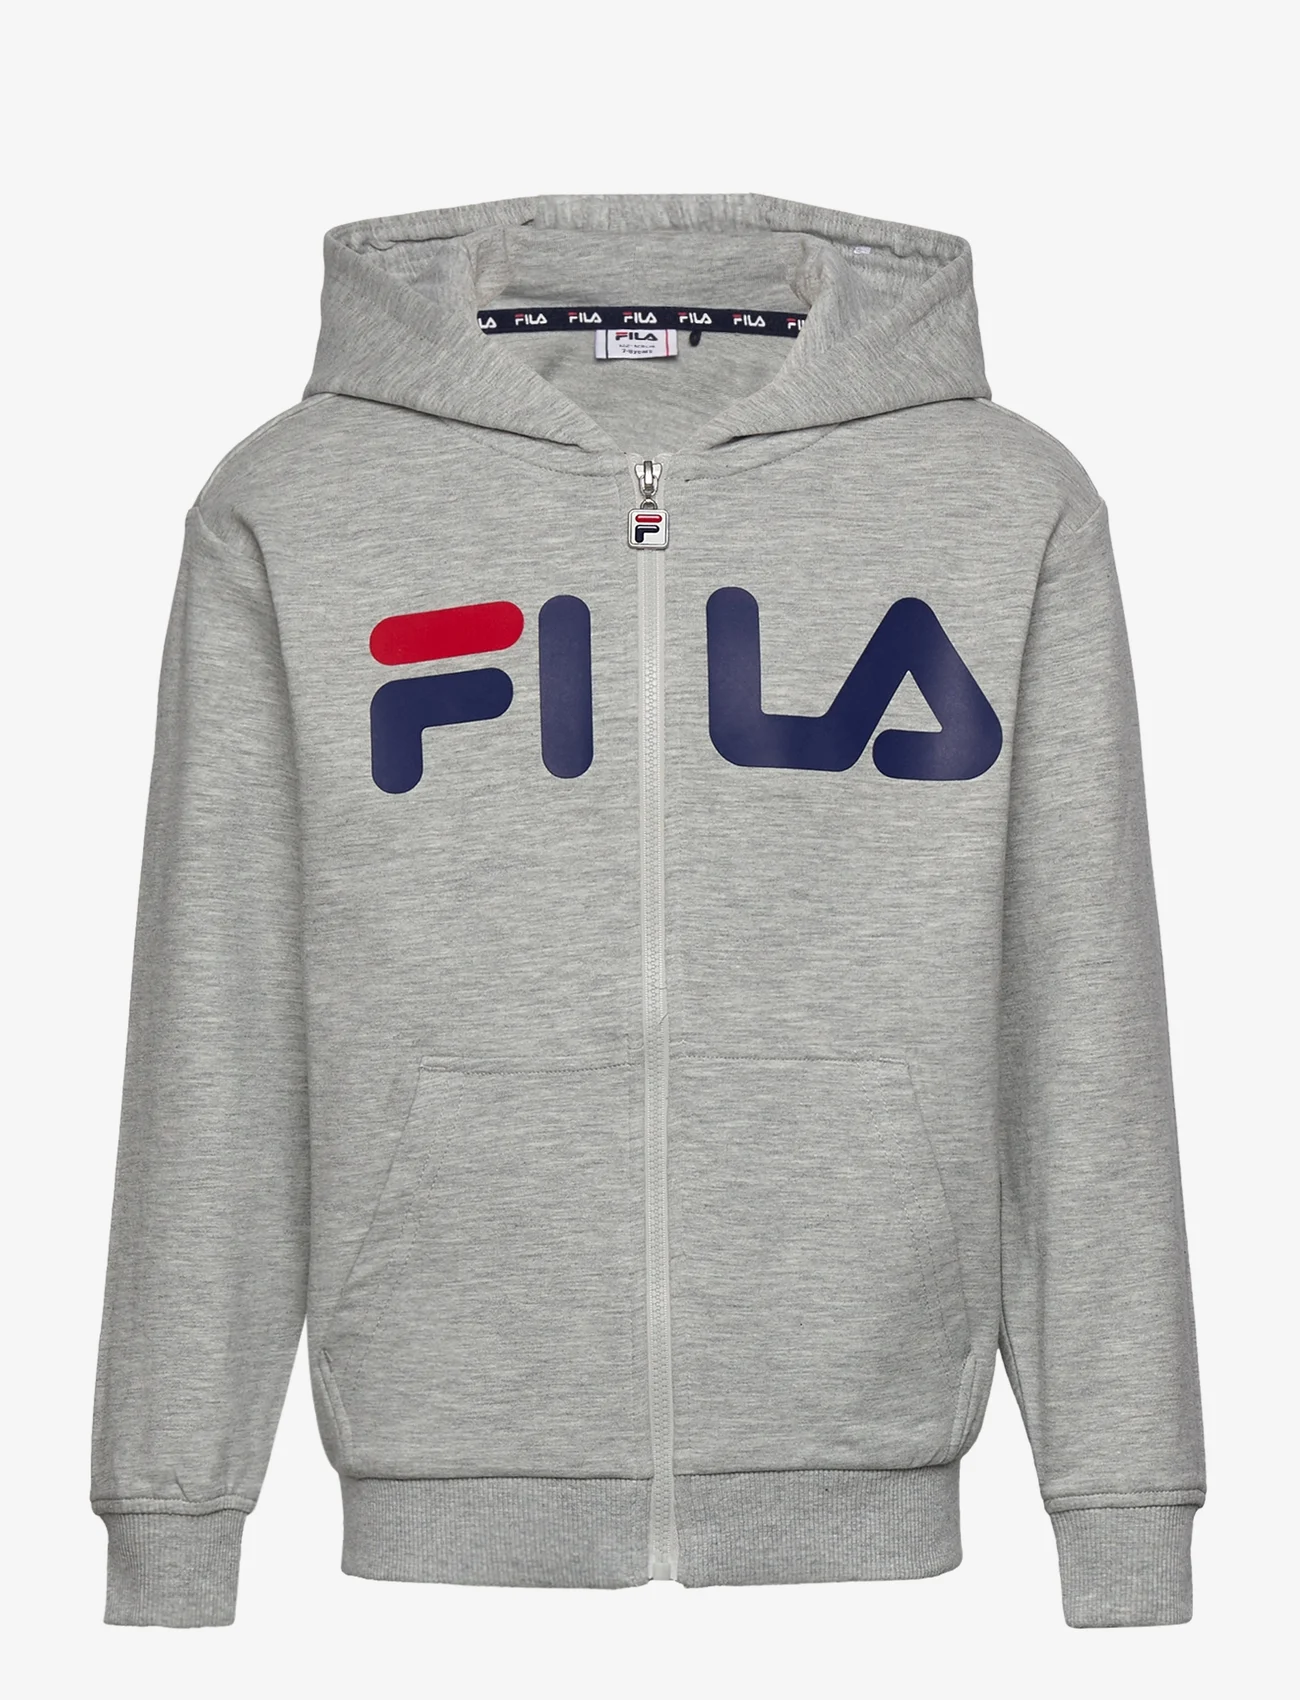 FILA - BALGE classic logo zip hoody - hettegensere - light grey melange - 0